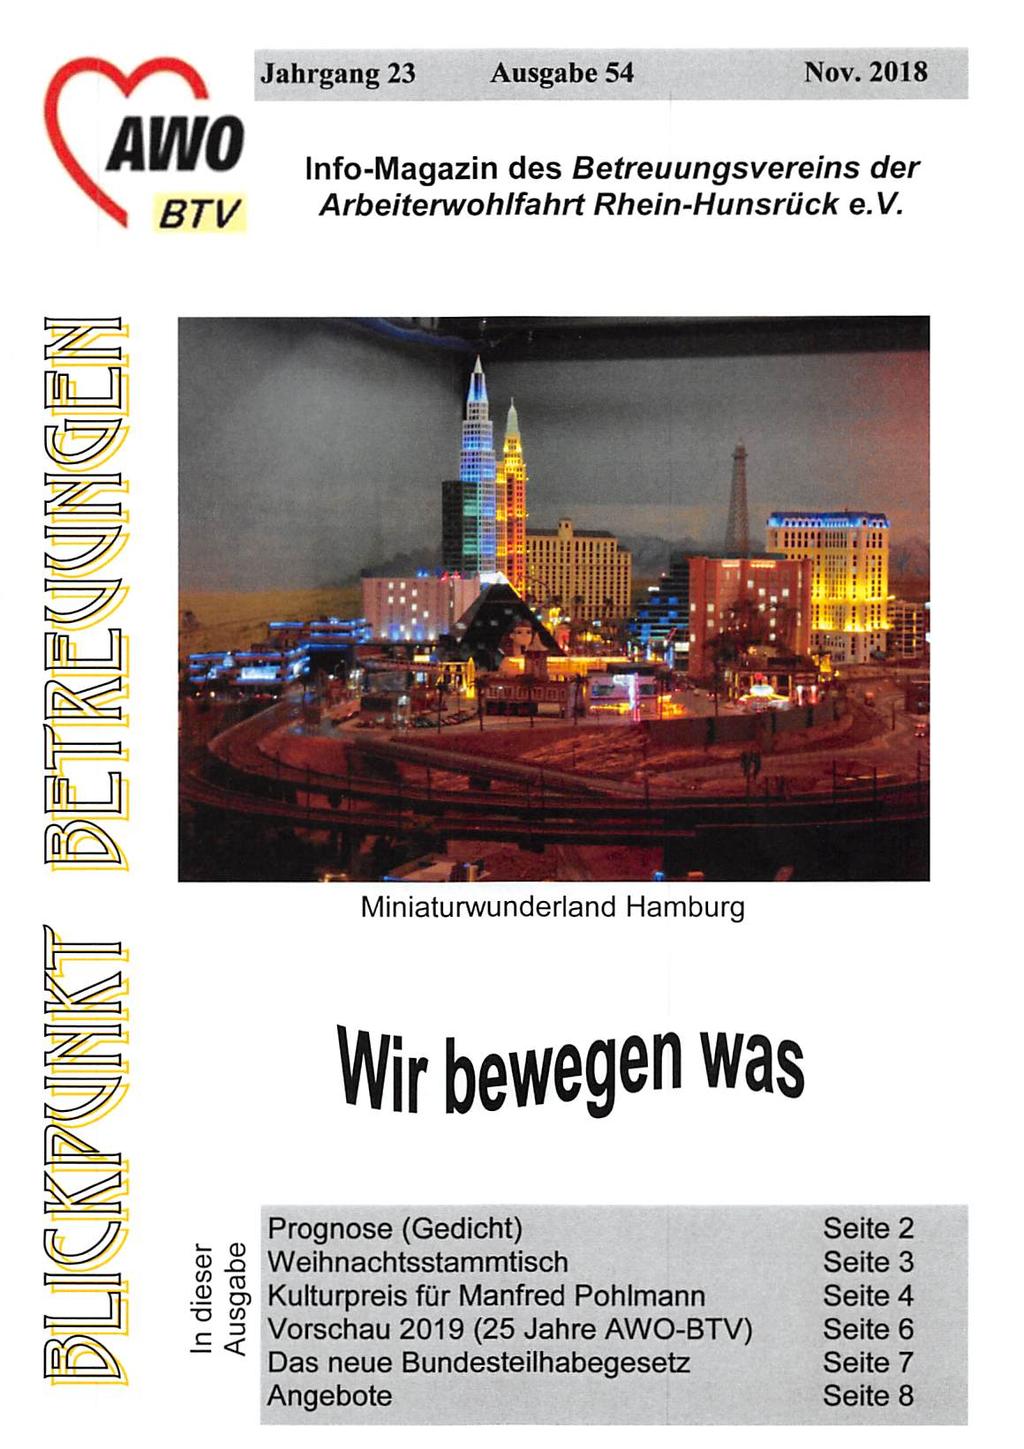 \Am \ BTl/ Jahrgang 23 Ausgabe 54 Nov. 2018 Info-Magazin des Betreuungsvereins der Arbeiterwohlfahrt Rhein-Hunsrück e.v. ILJ Miniaturwunderland Hamburg Wir bewegen was r=r.